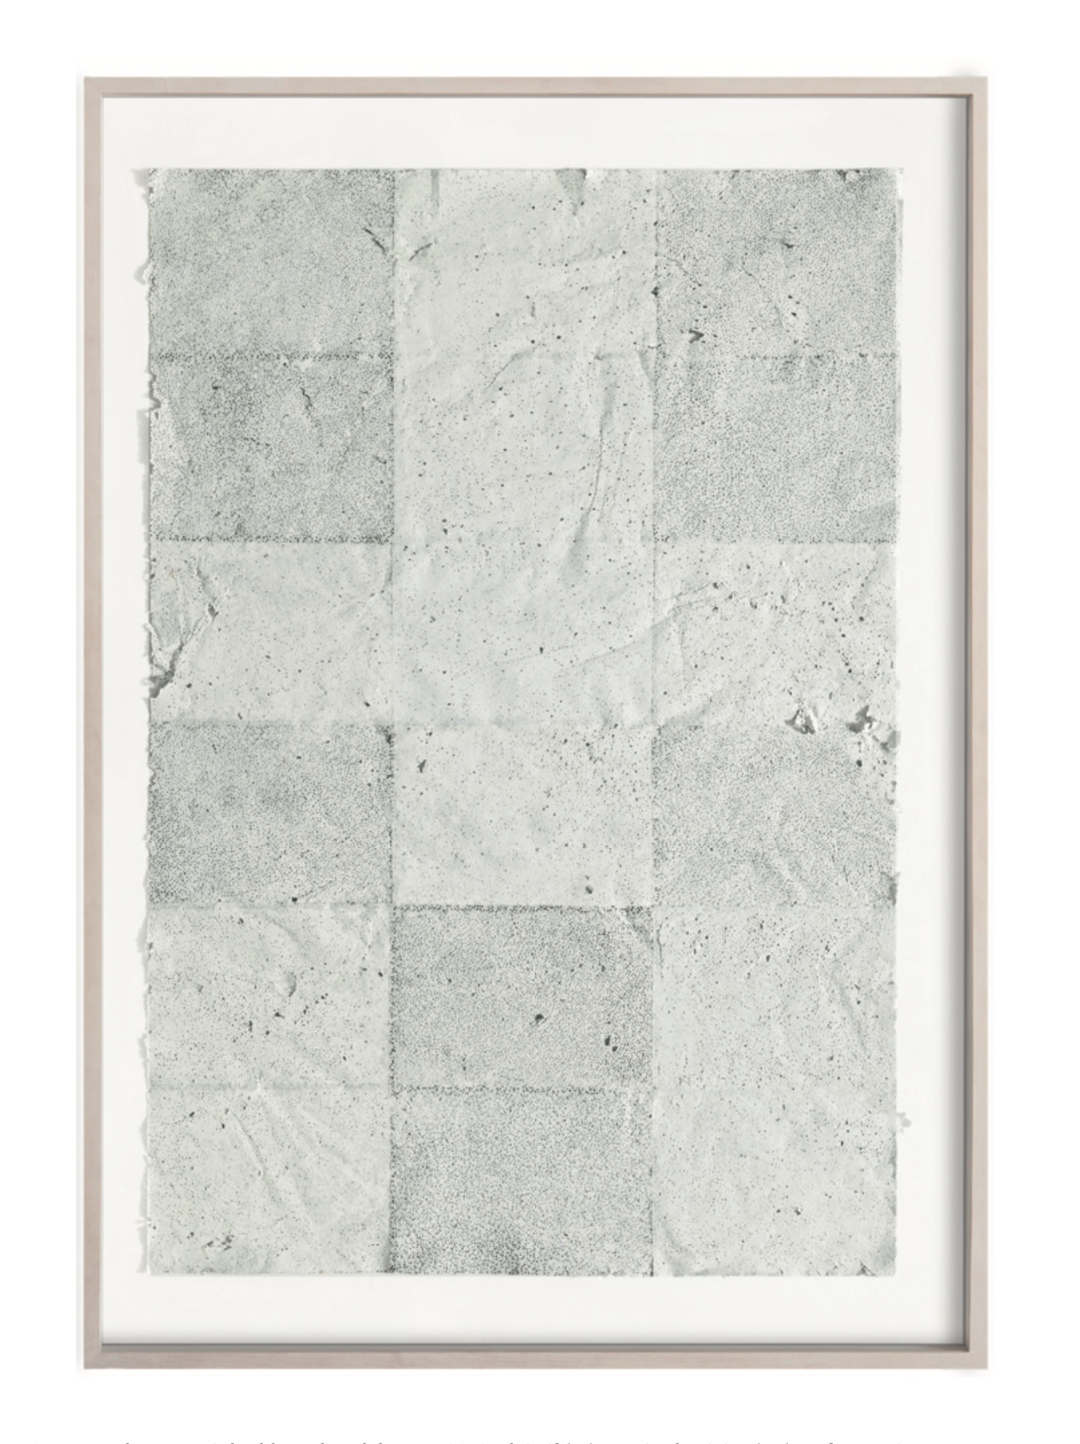 Martin Bruno Schmid, Bohrzeichnung, 2012, Bleistiftbohrung in aluminiumbedampftes Papier, 140 cm x 100 cm, gerahmt, Preis auf Anfrage